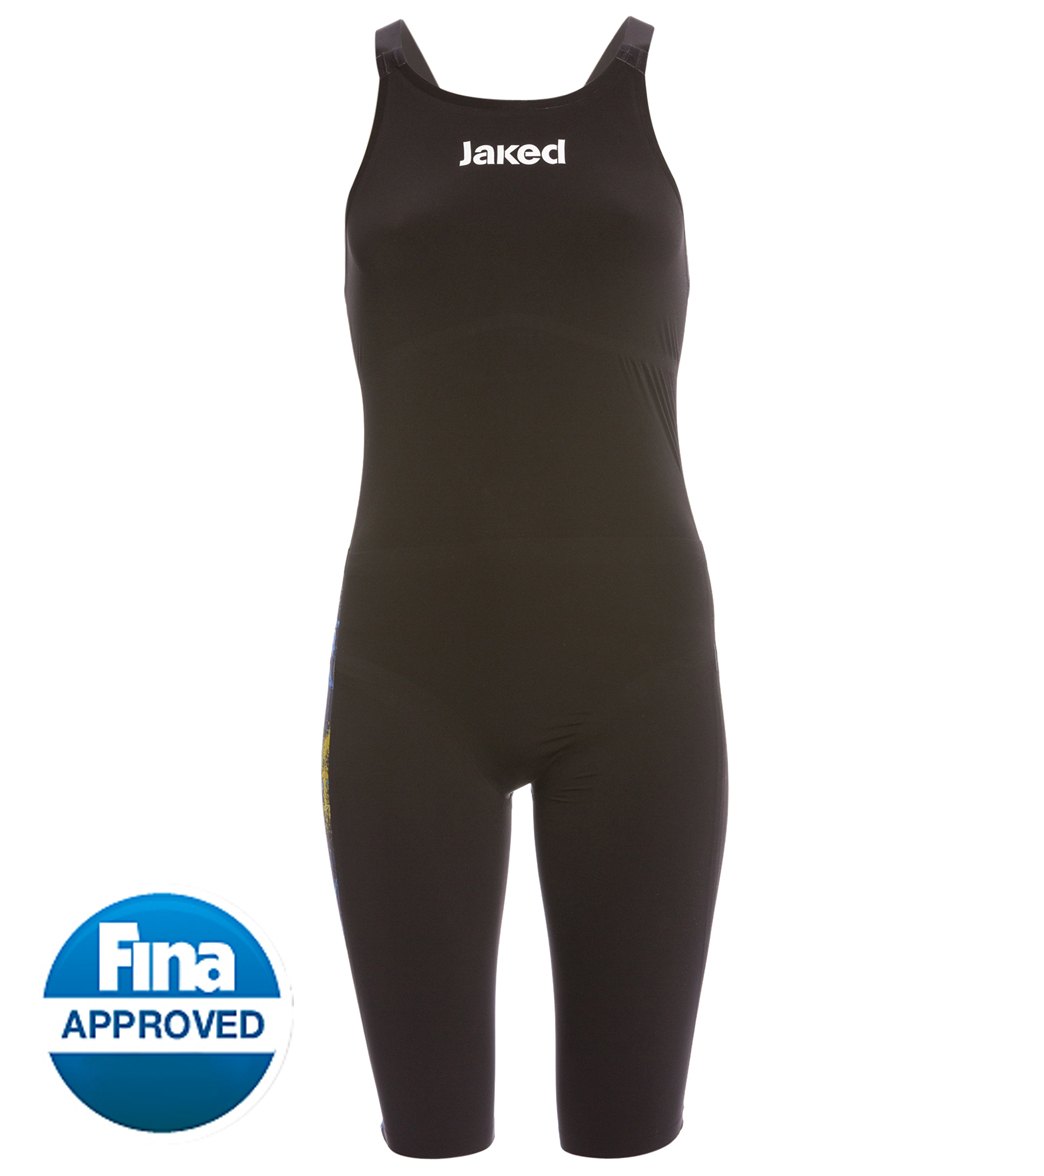 Jaked Women's Jkeel Legend Open Back Kneeskin Tech Suit Swimsuit - Black/Blue 20 - Swimoutlet.com